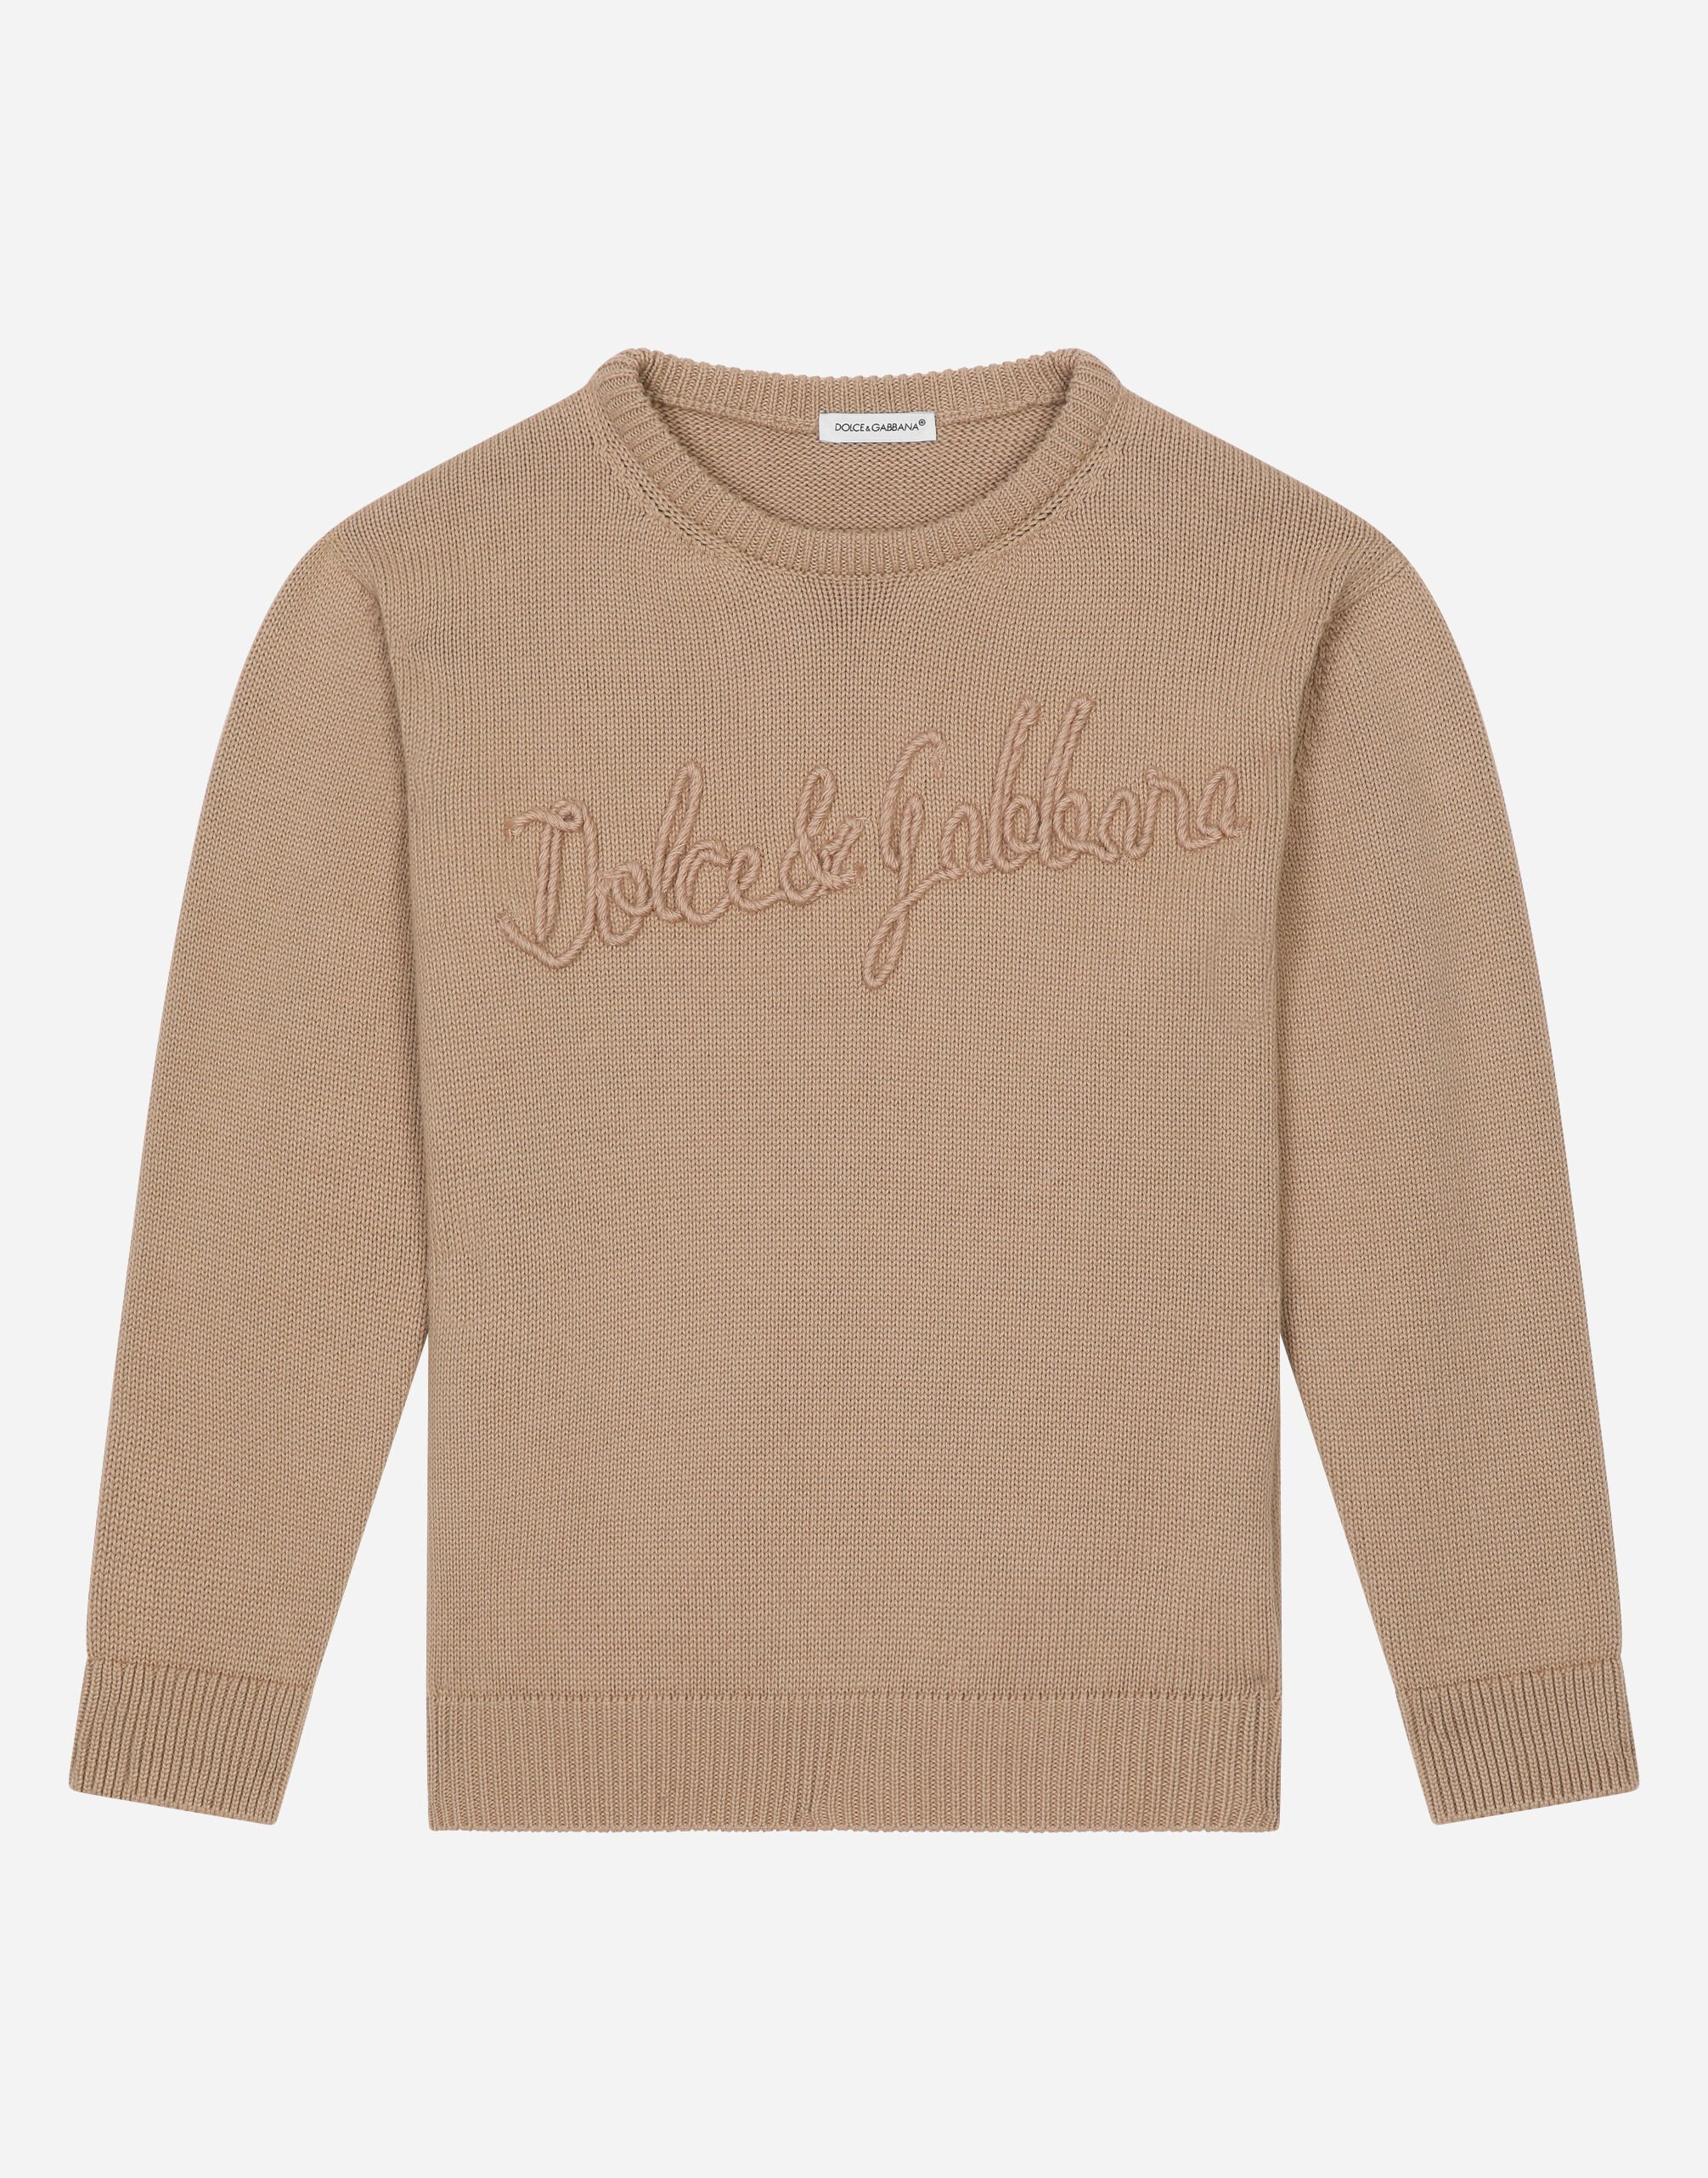 ${brand} Pullover in cotone con logo Dolce&Gabbana ${colorDescription} ${masterID}